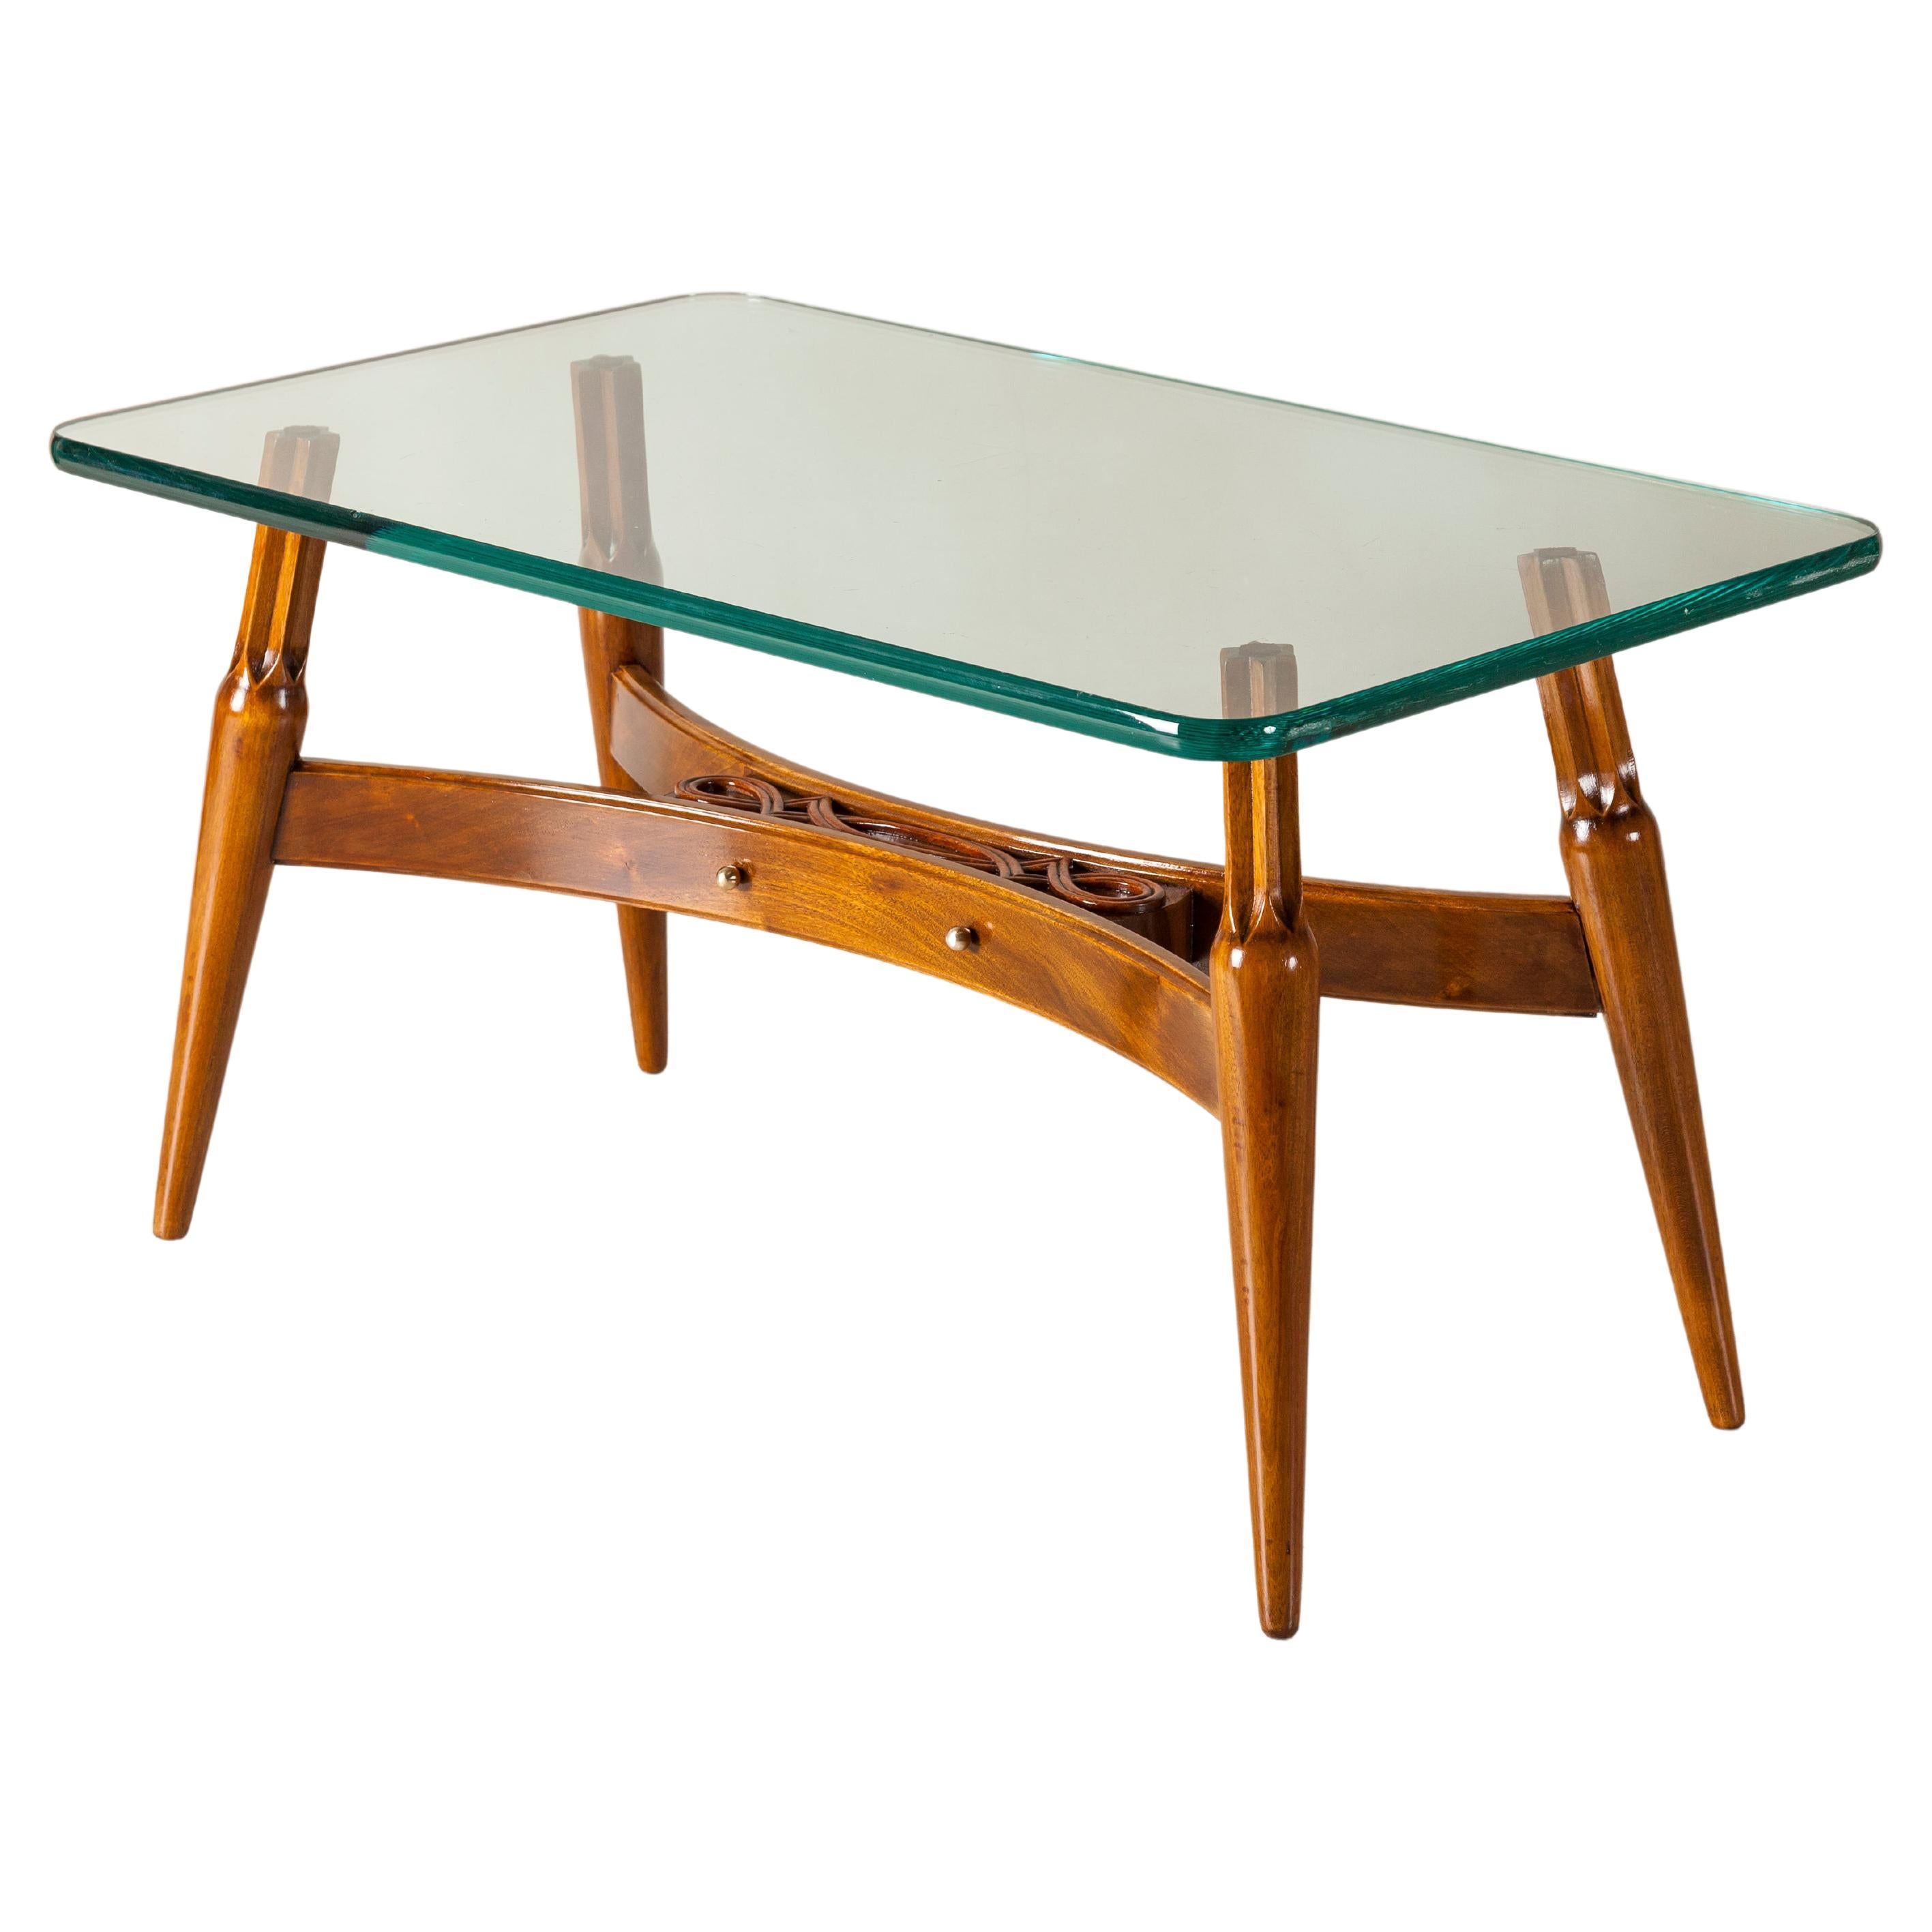 Niedriger Tisch aus Holz und Glas von Englander & Bonta, Argentinien, um 1950